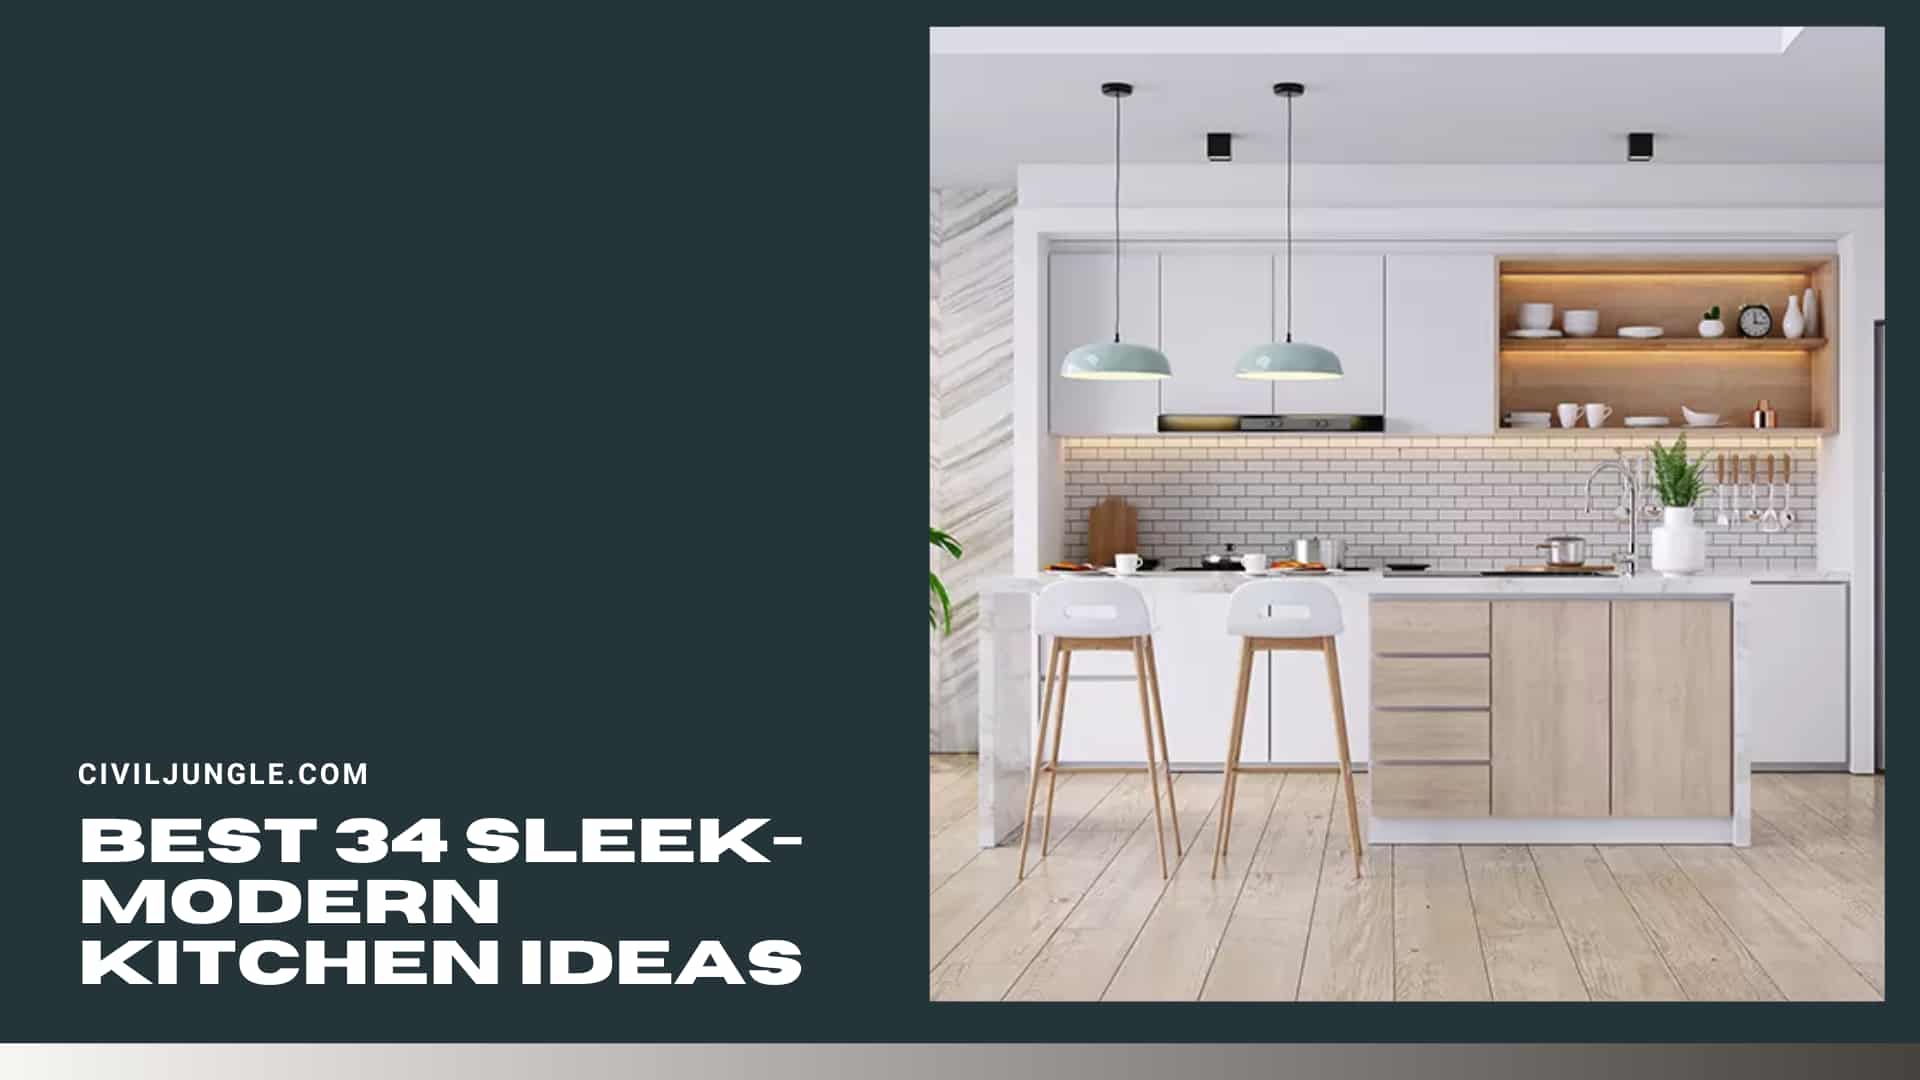 Best 34 Sleek-Modern Kitchen ideas